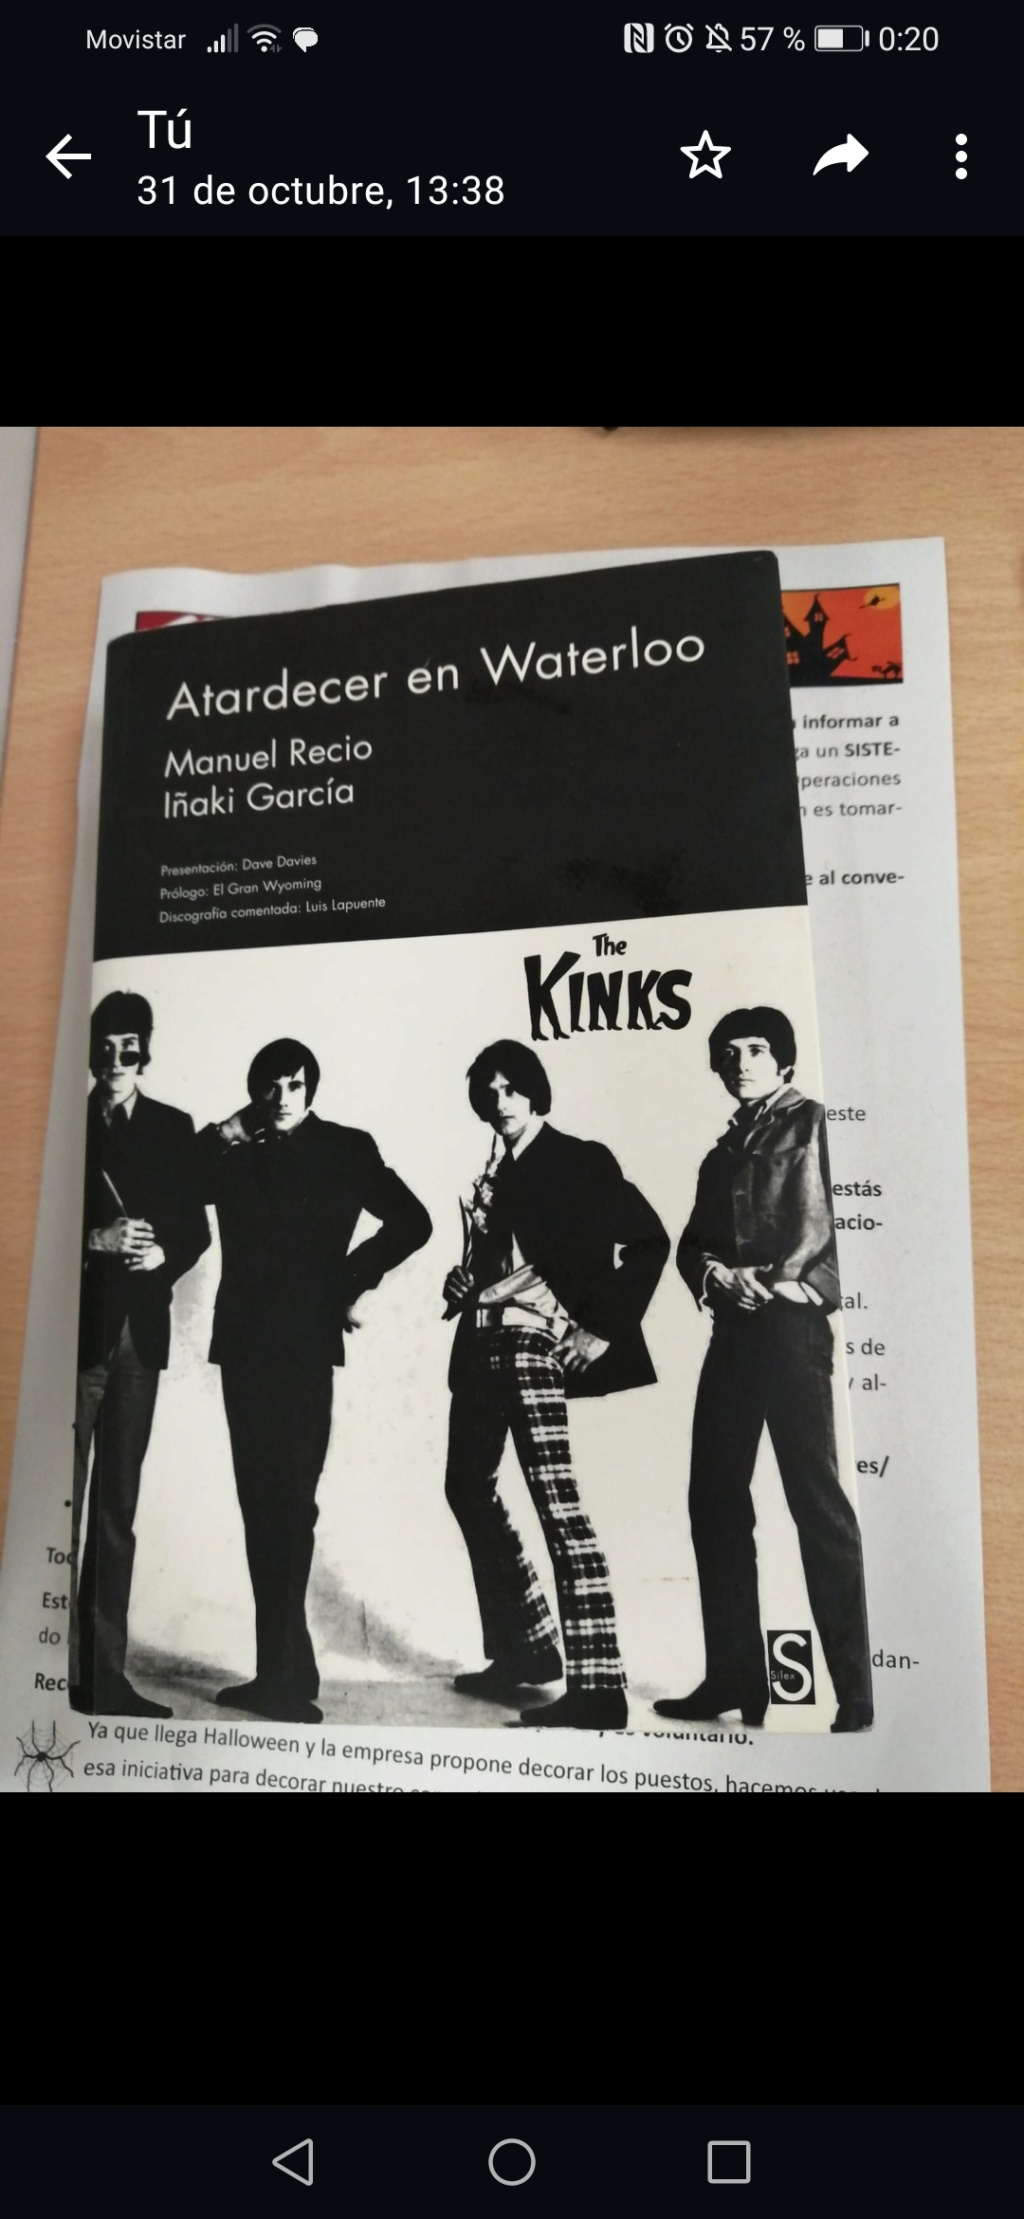 Life stinks, so ¿cuál es el mejor disco de los Kinks? Screen30